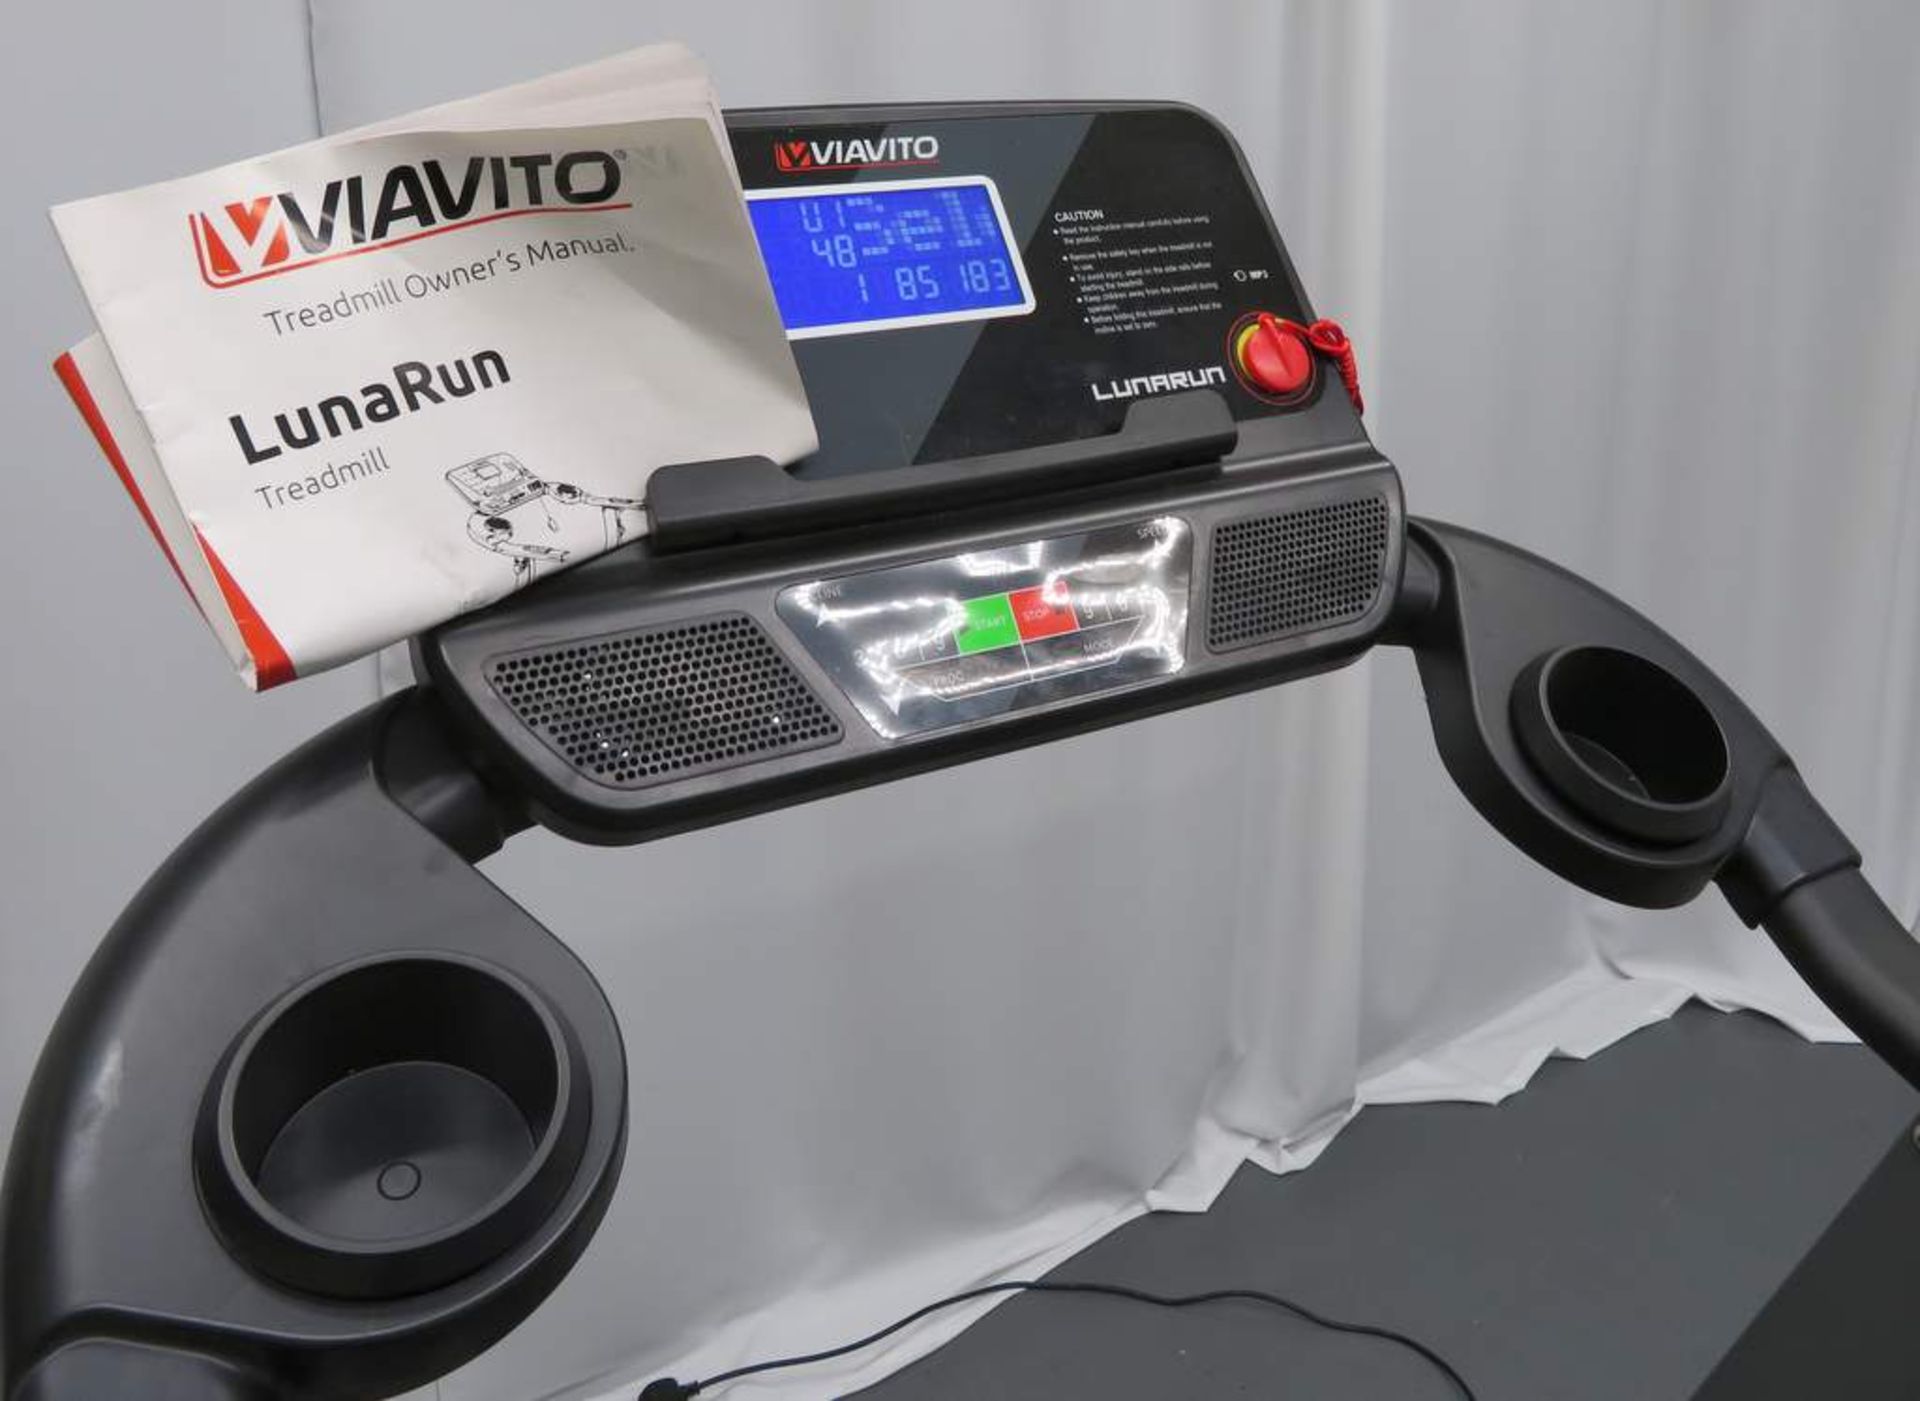 Viavito Luna Run Treadmill - Foldable. - Image 3 of 6